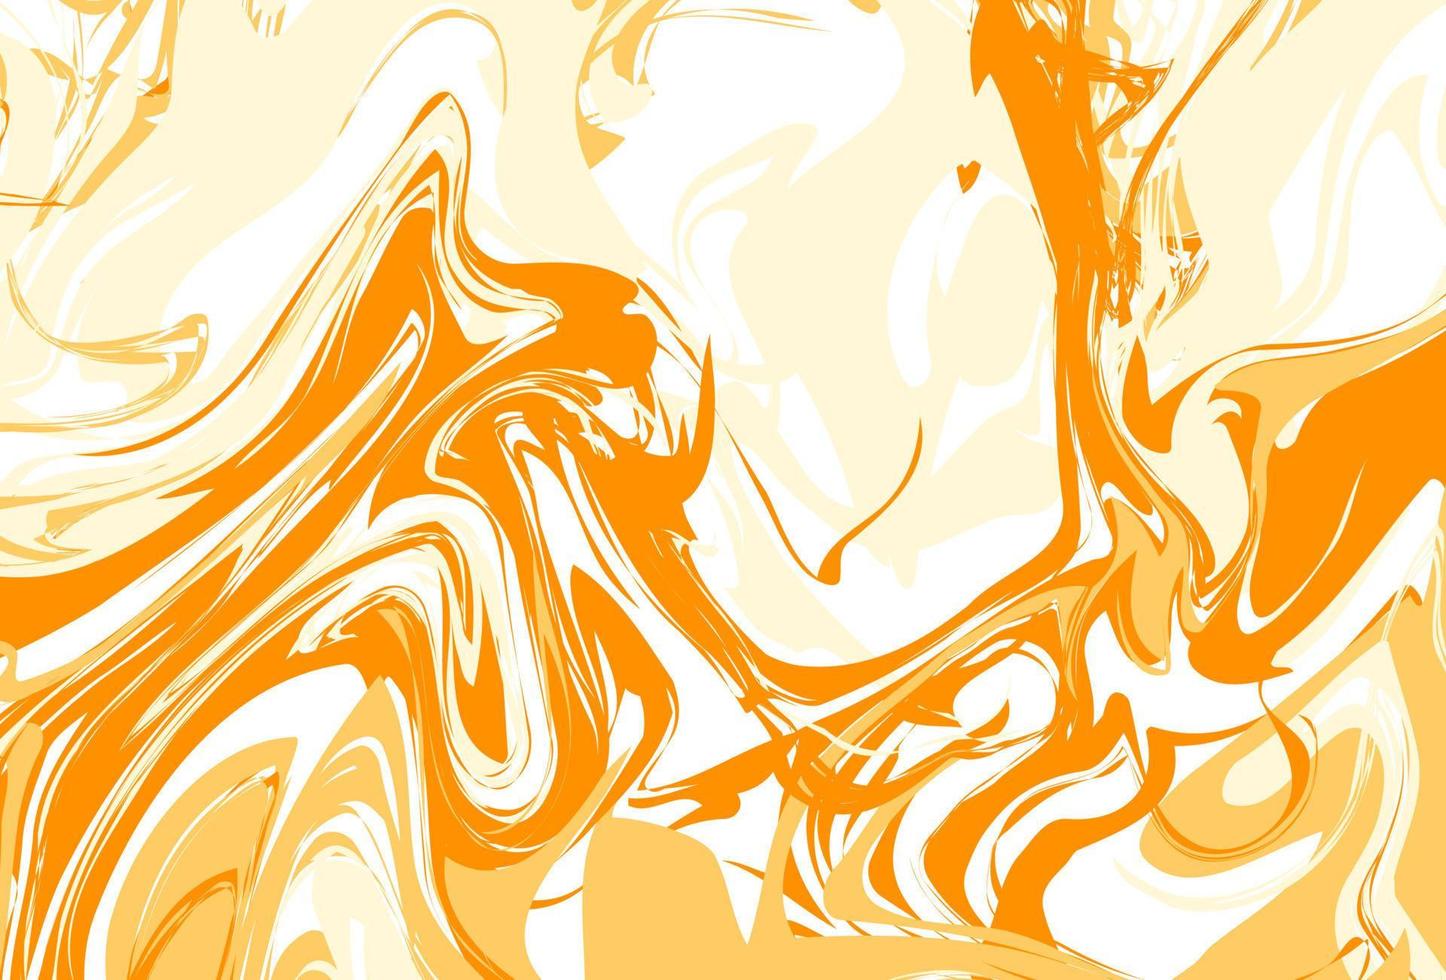 abstract marmeren patronen, hout textuur, waterverf marmeren patronen. oranje en geel. vector achtergrond. modieus textiel, stoffen, omslagen. aqua inkt schilderij Aan water